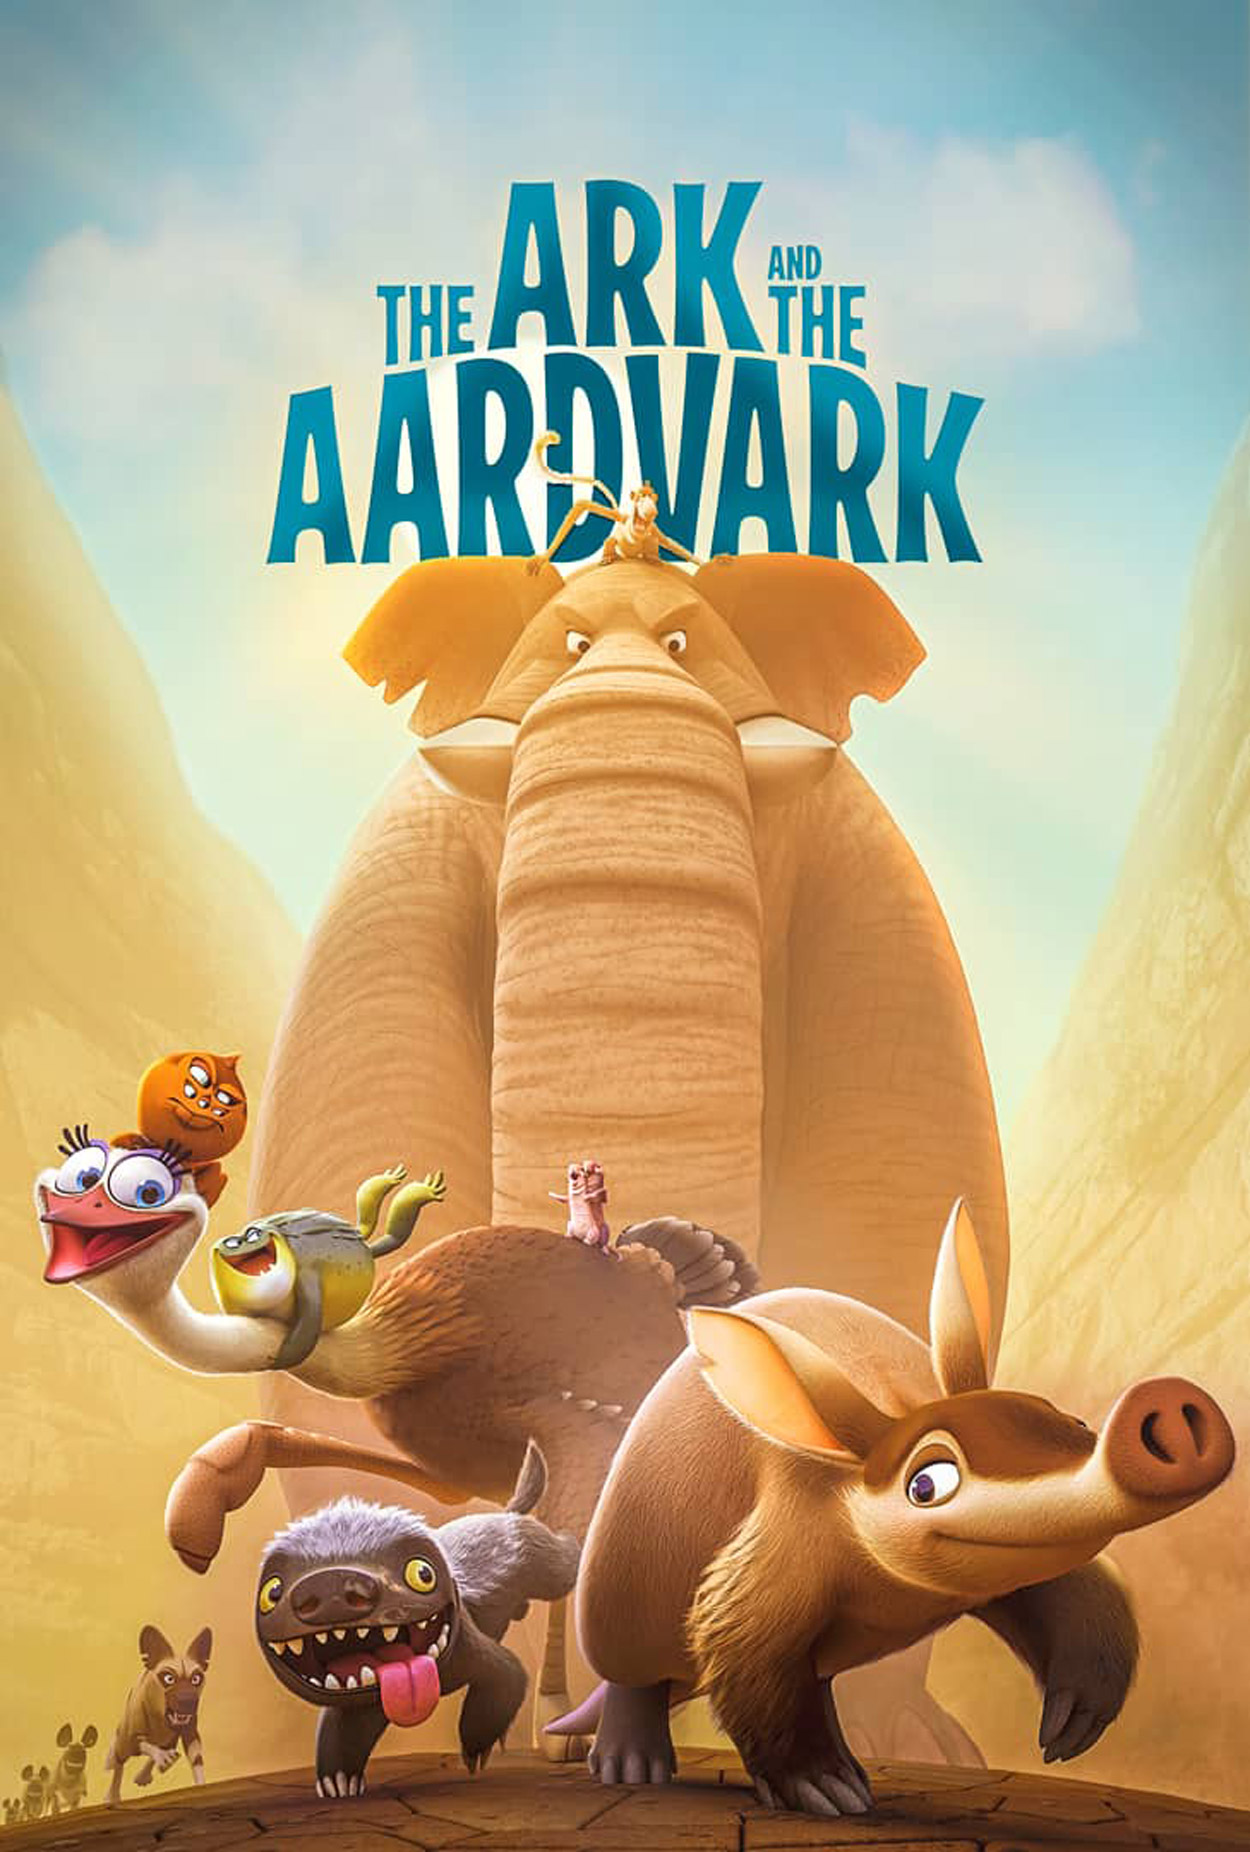 The Ark and the Aardvark (2020) Theatrical Cartoon